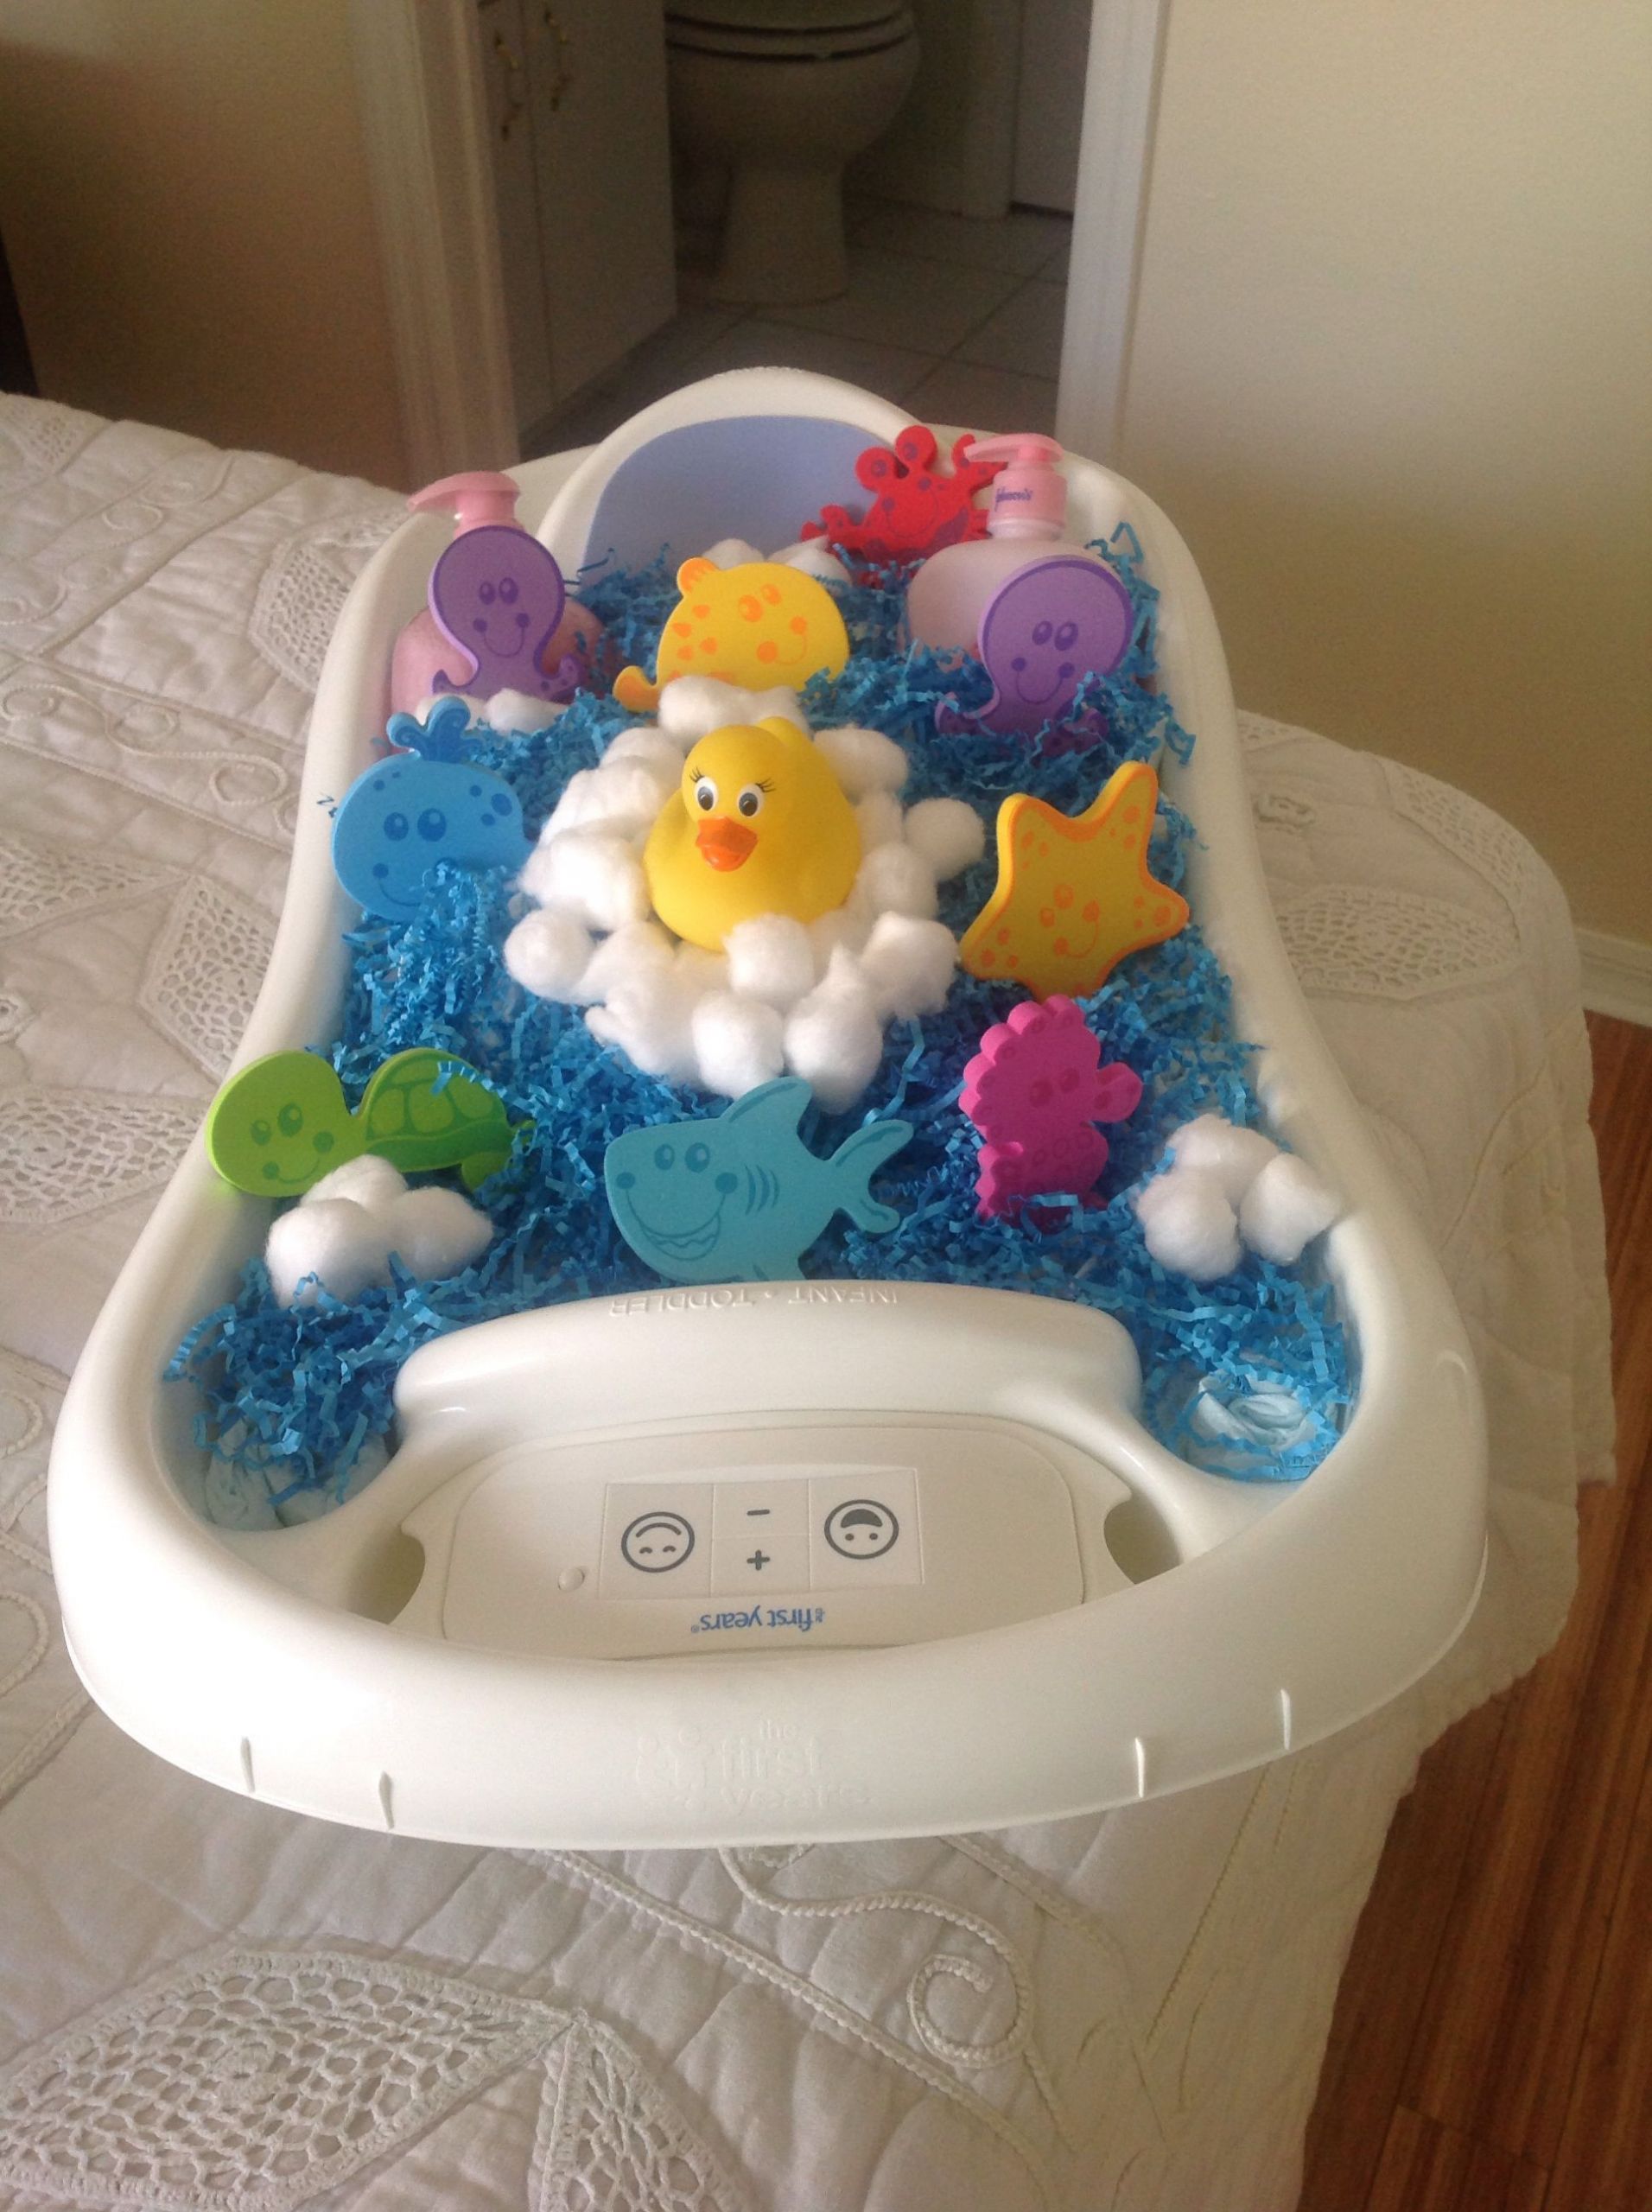 Baby Bath Tub Gift Ideas
 Bath time diaper cake in baby tub